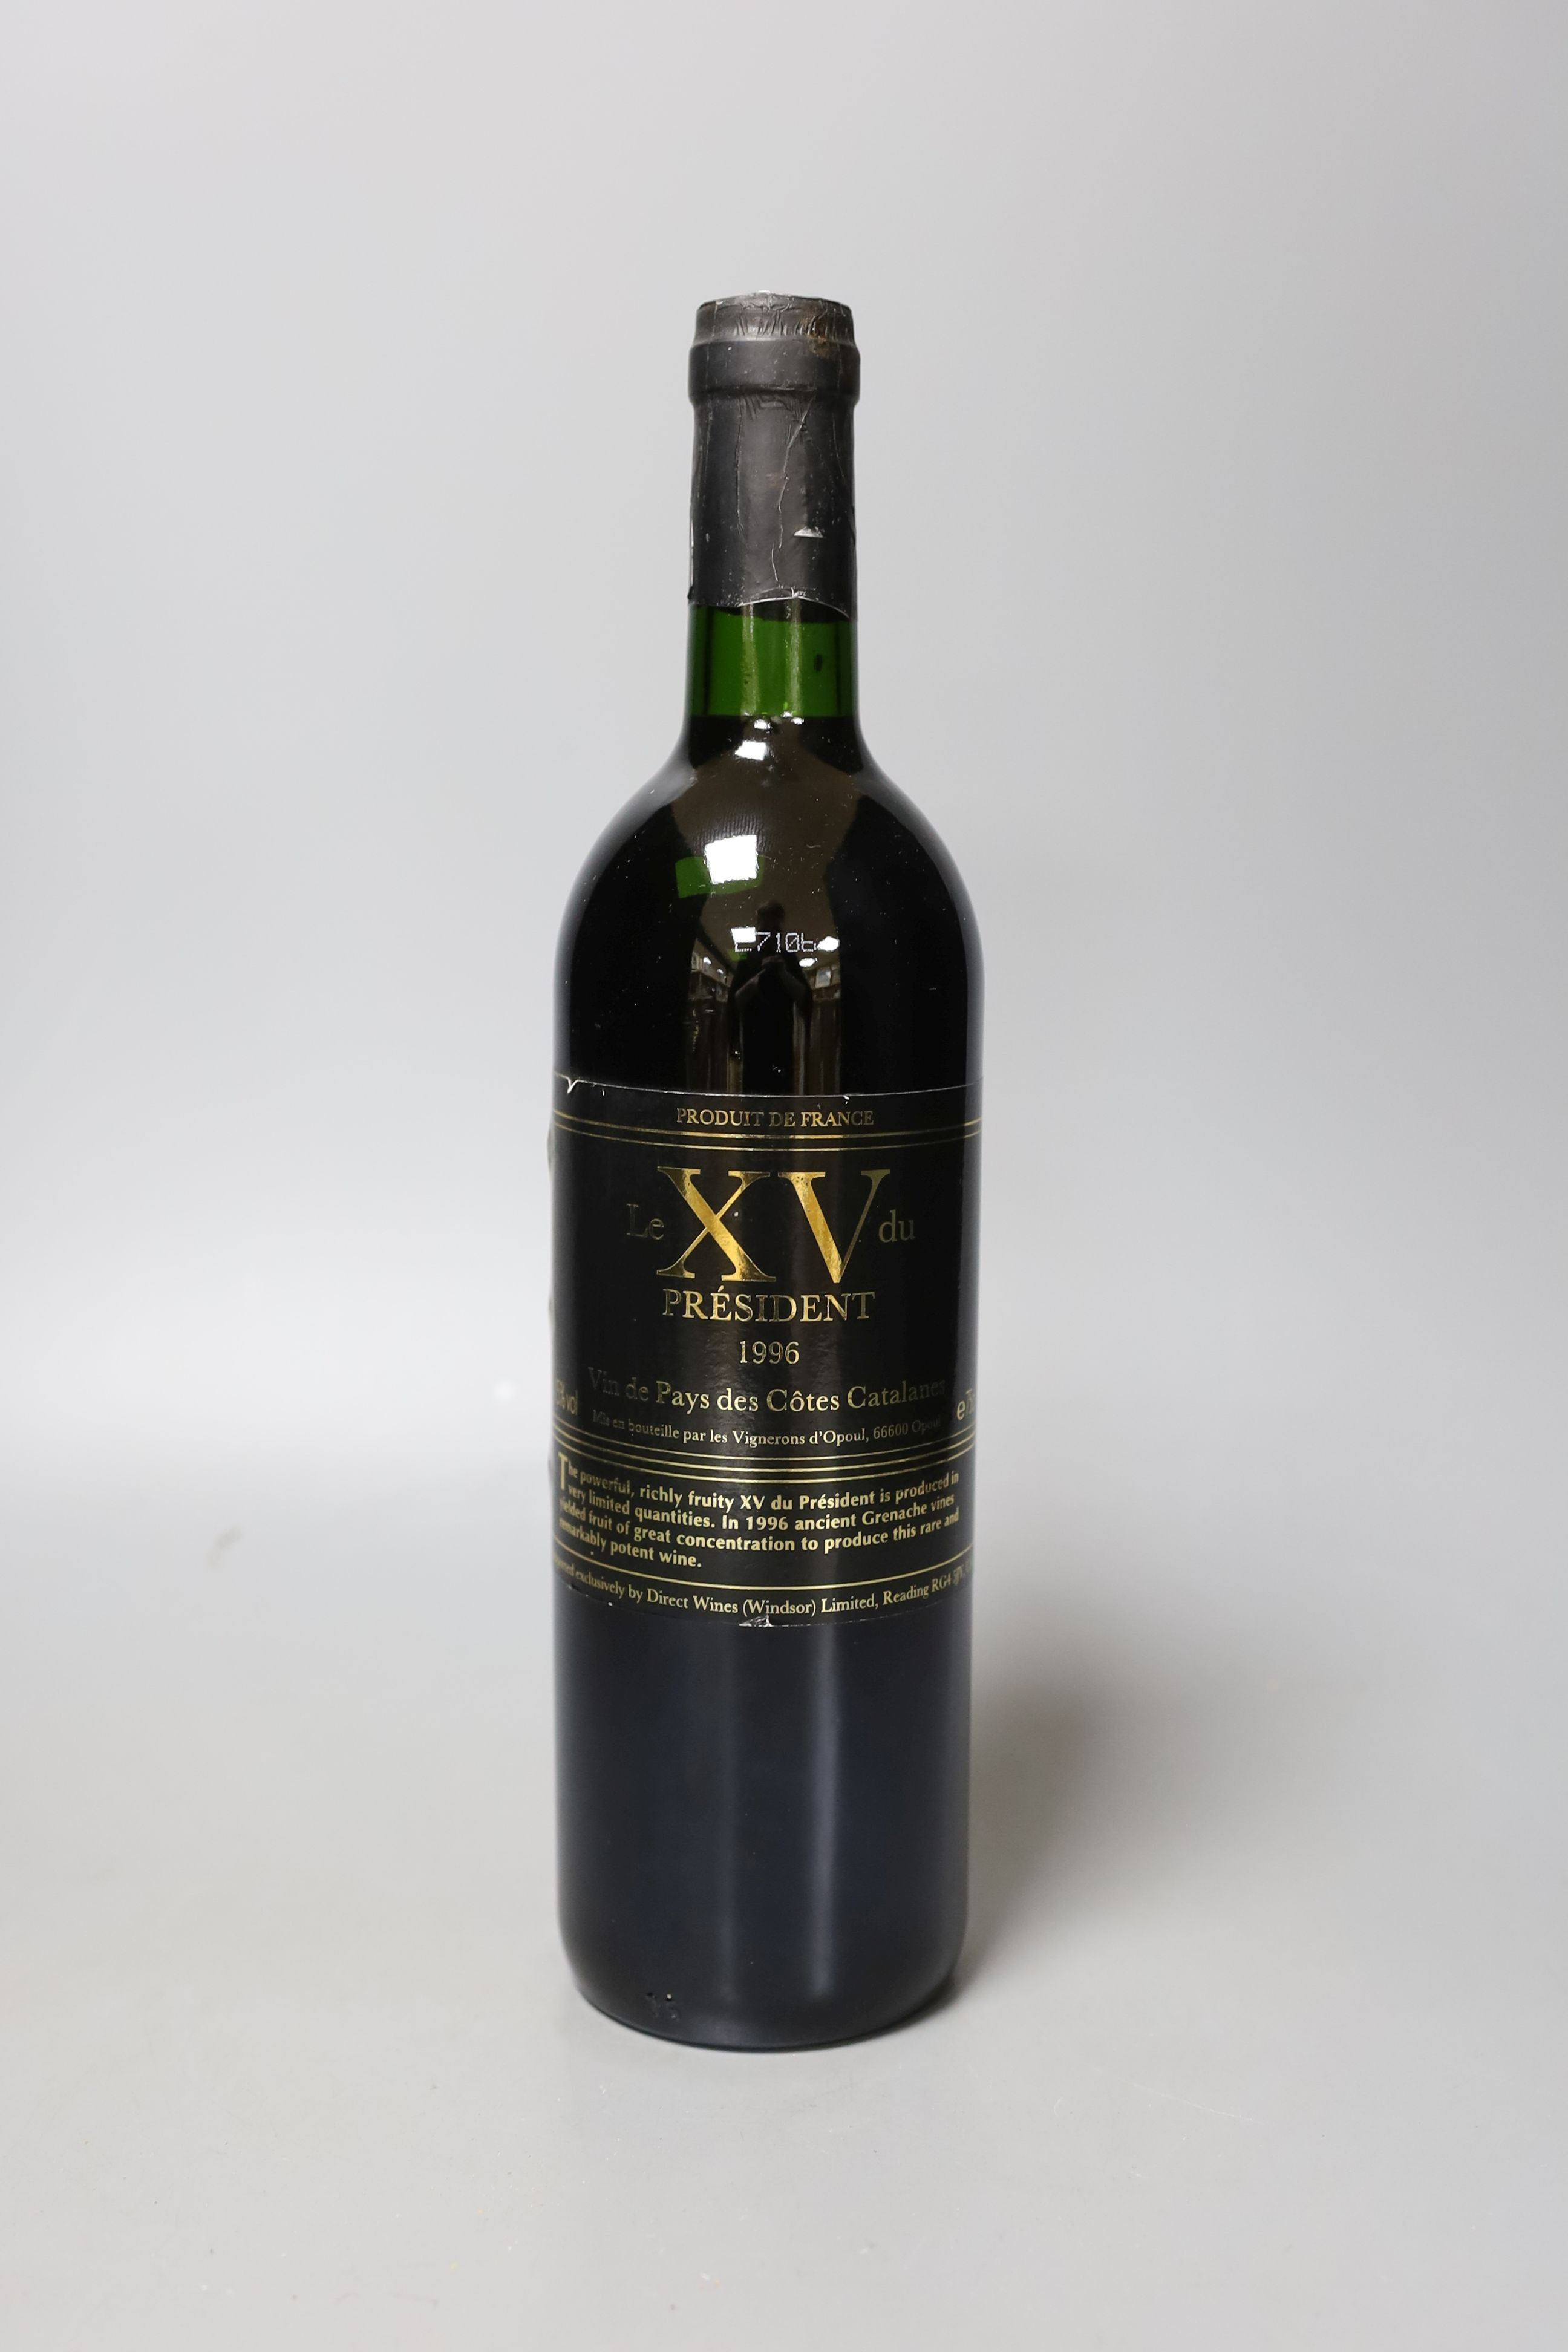 Eleven bottles of Le XV du President Grenache Vielle Vignes - IGP Cotes Catalanes 1996 75cl